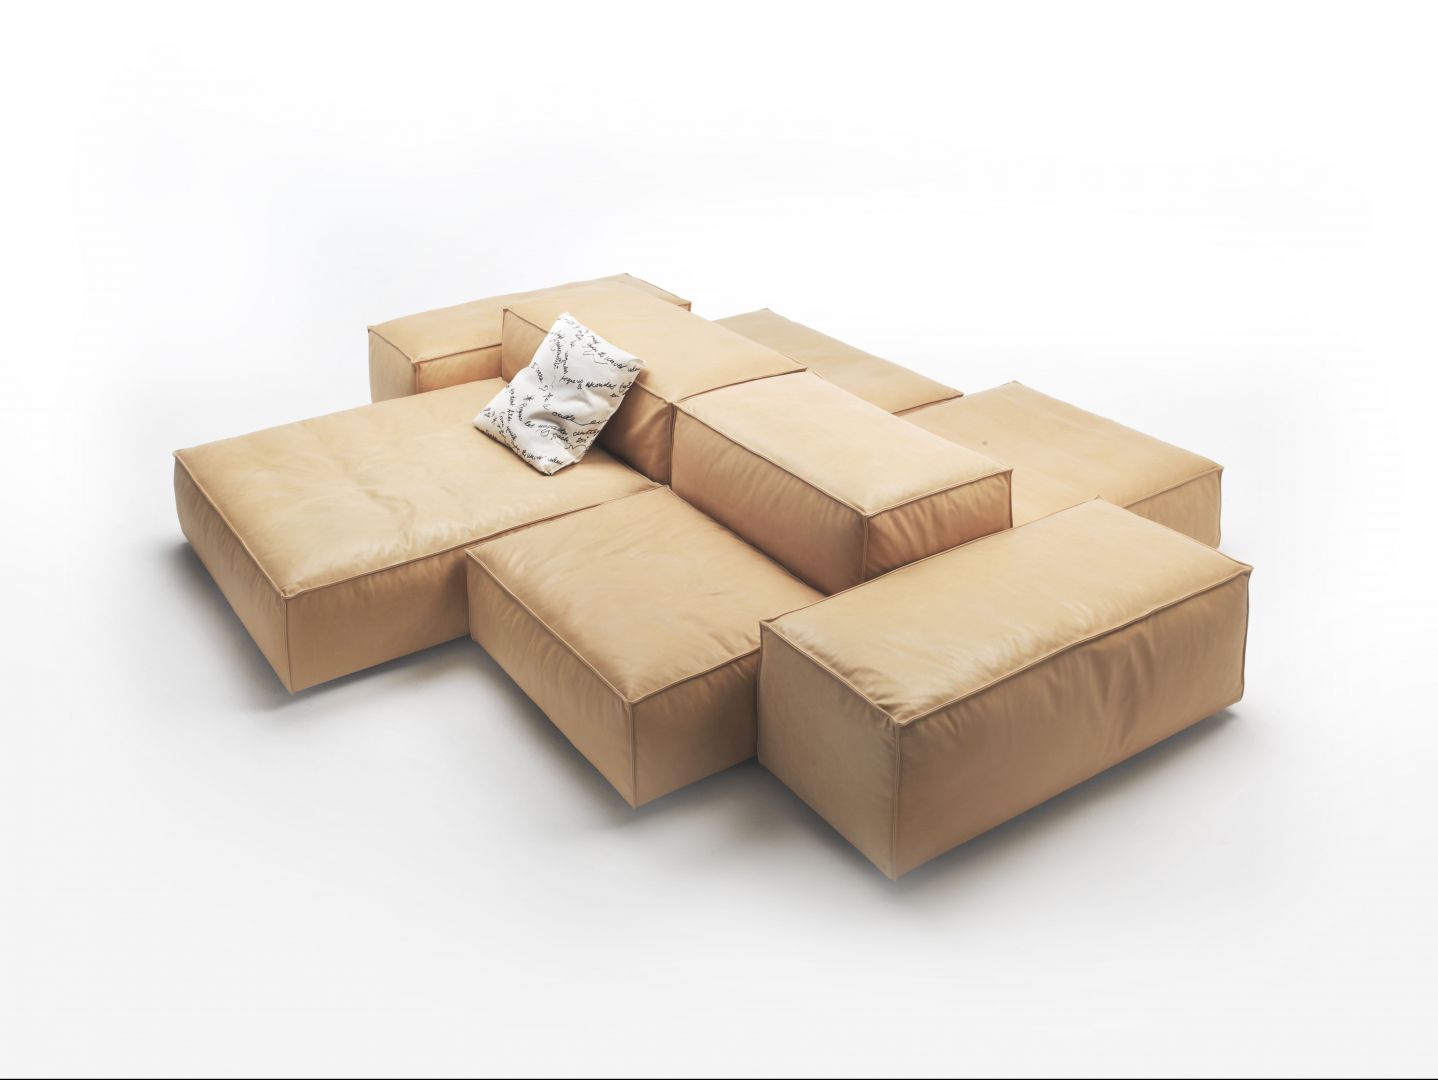 Sofa modułowa, marki Living Divani, model Extrasoft, projekt Piero Lissoni. Wypełnienie oparć i siedzisk sofy składa się z pianki poliuretanowej o różnym stopniu miękkości. Wewnątrz znajduje się również warstwa przemytego i wysterylizowanego gęsiego puchu.  Fot. Archiwum